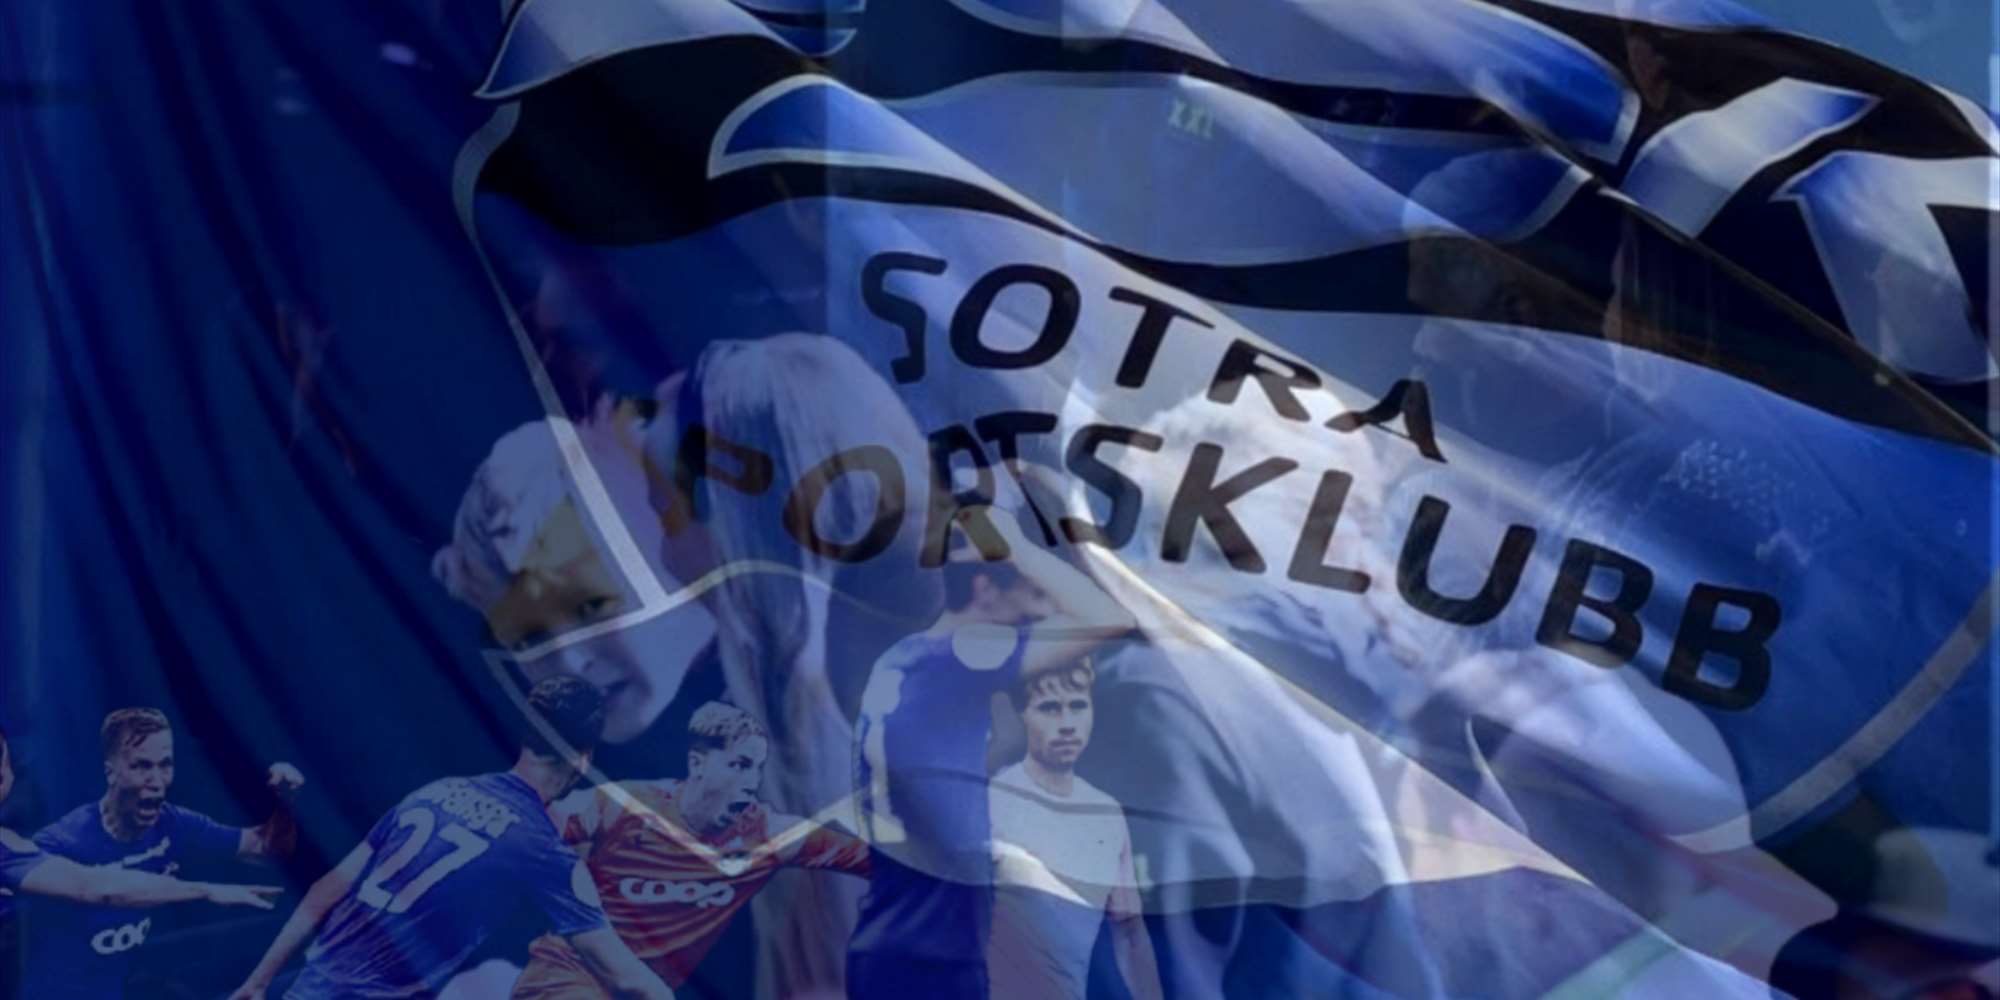 Seriekamp Sotra - Tromsdalen